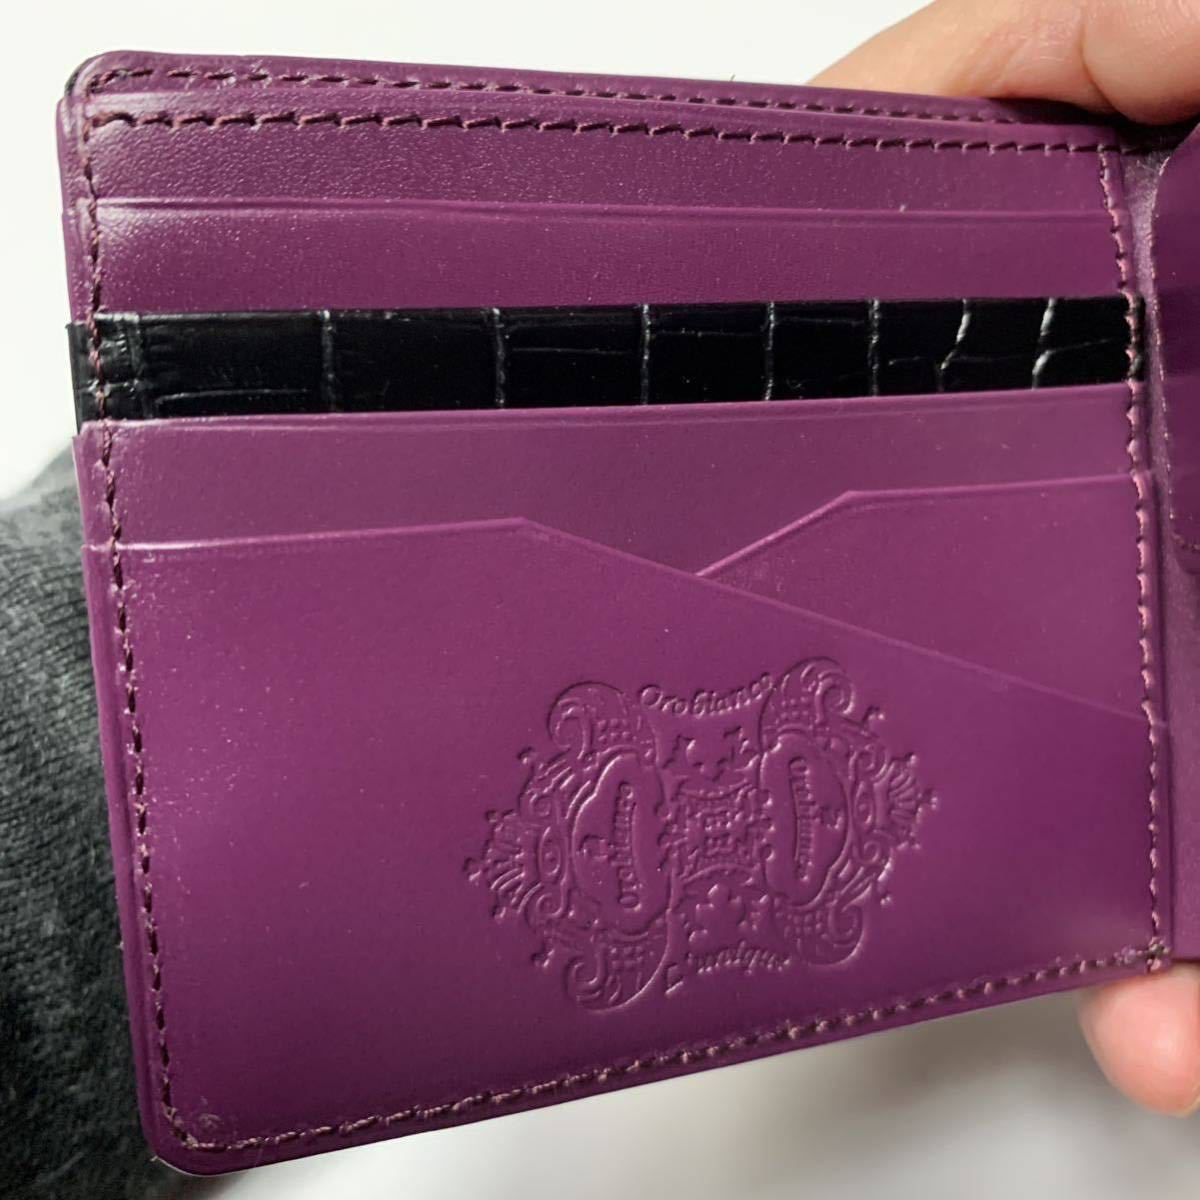 未使用保管品オロビアンコ メンズ二つ折り財布クロコ型押しブラック×パープル黒紫 カードケース多し 小銭入れ付き コインケース付き_画像6